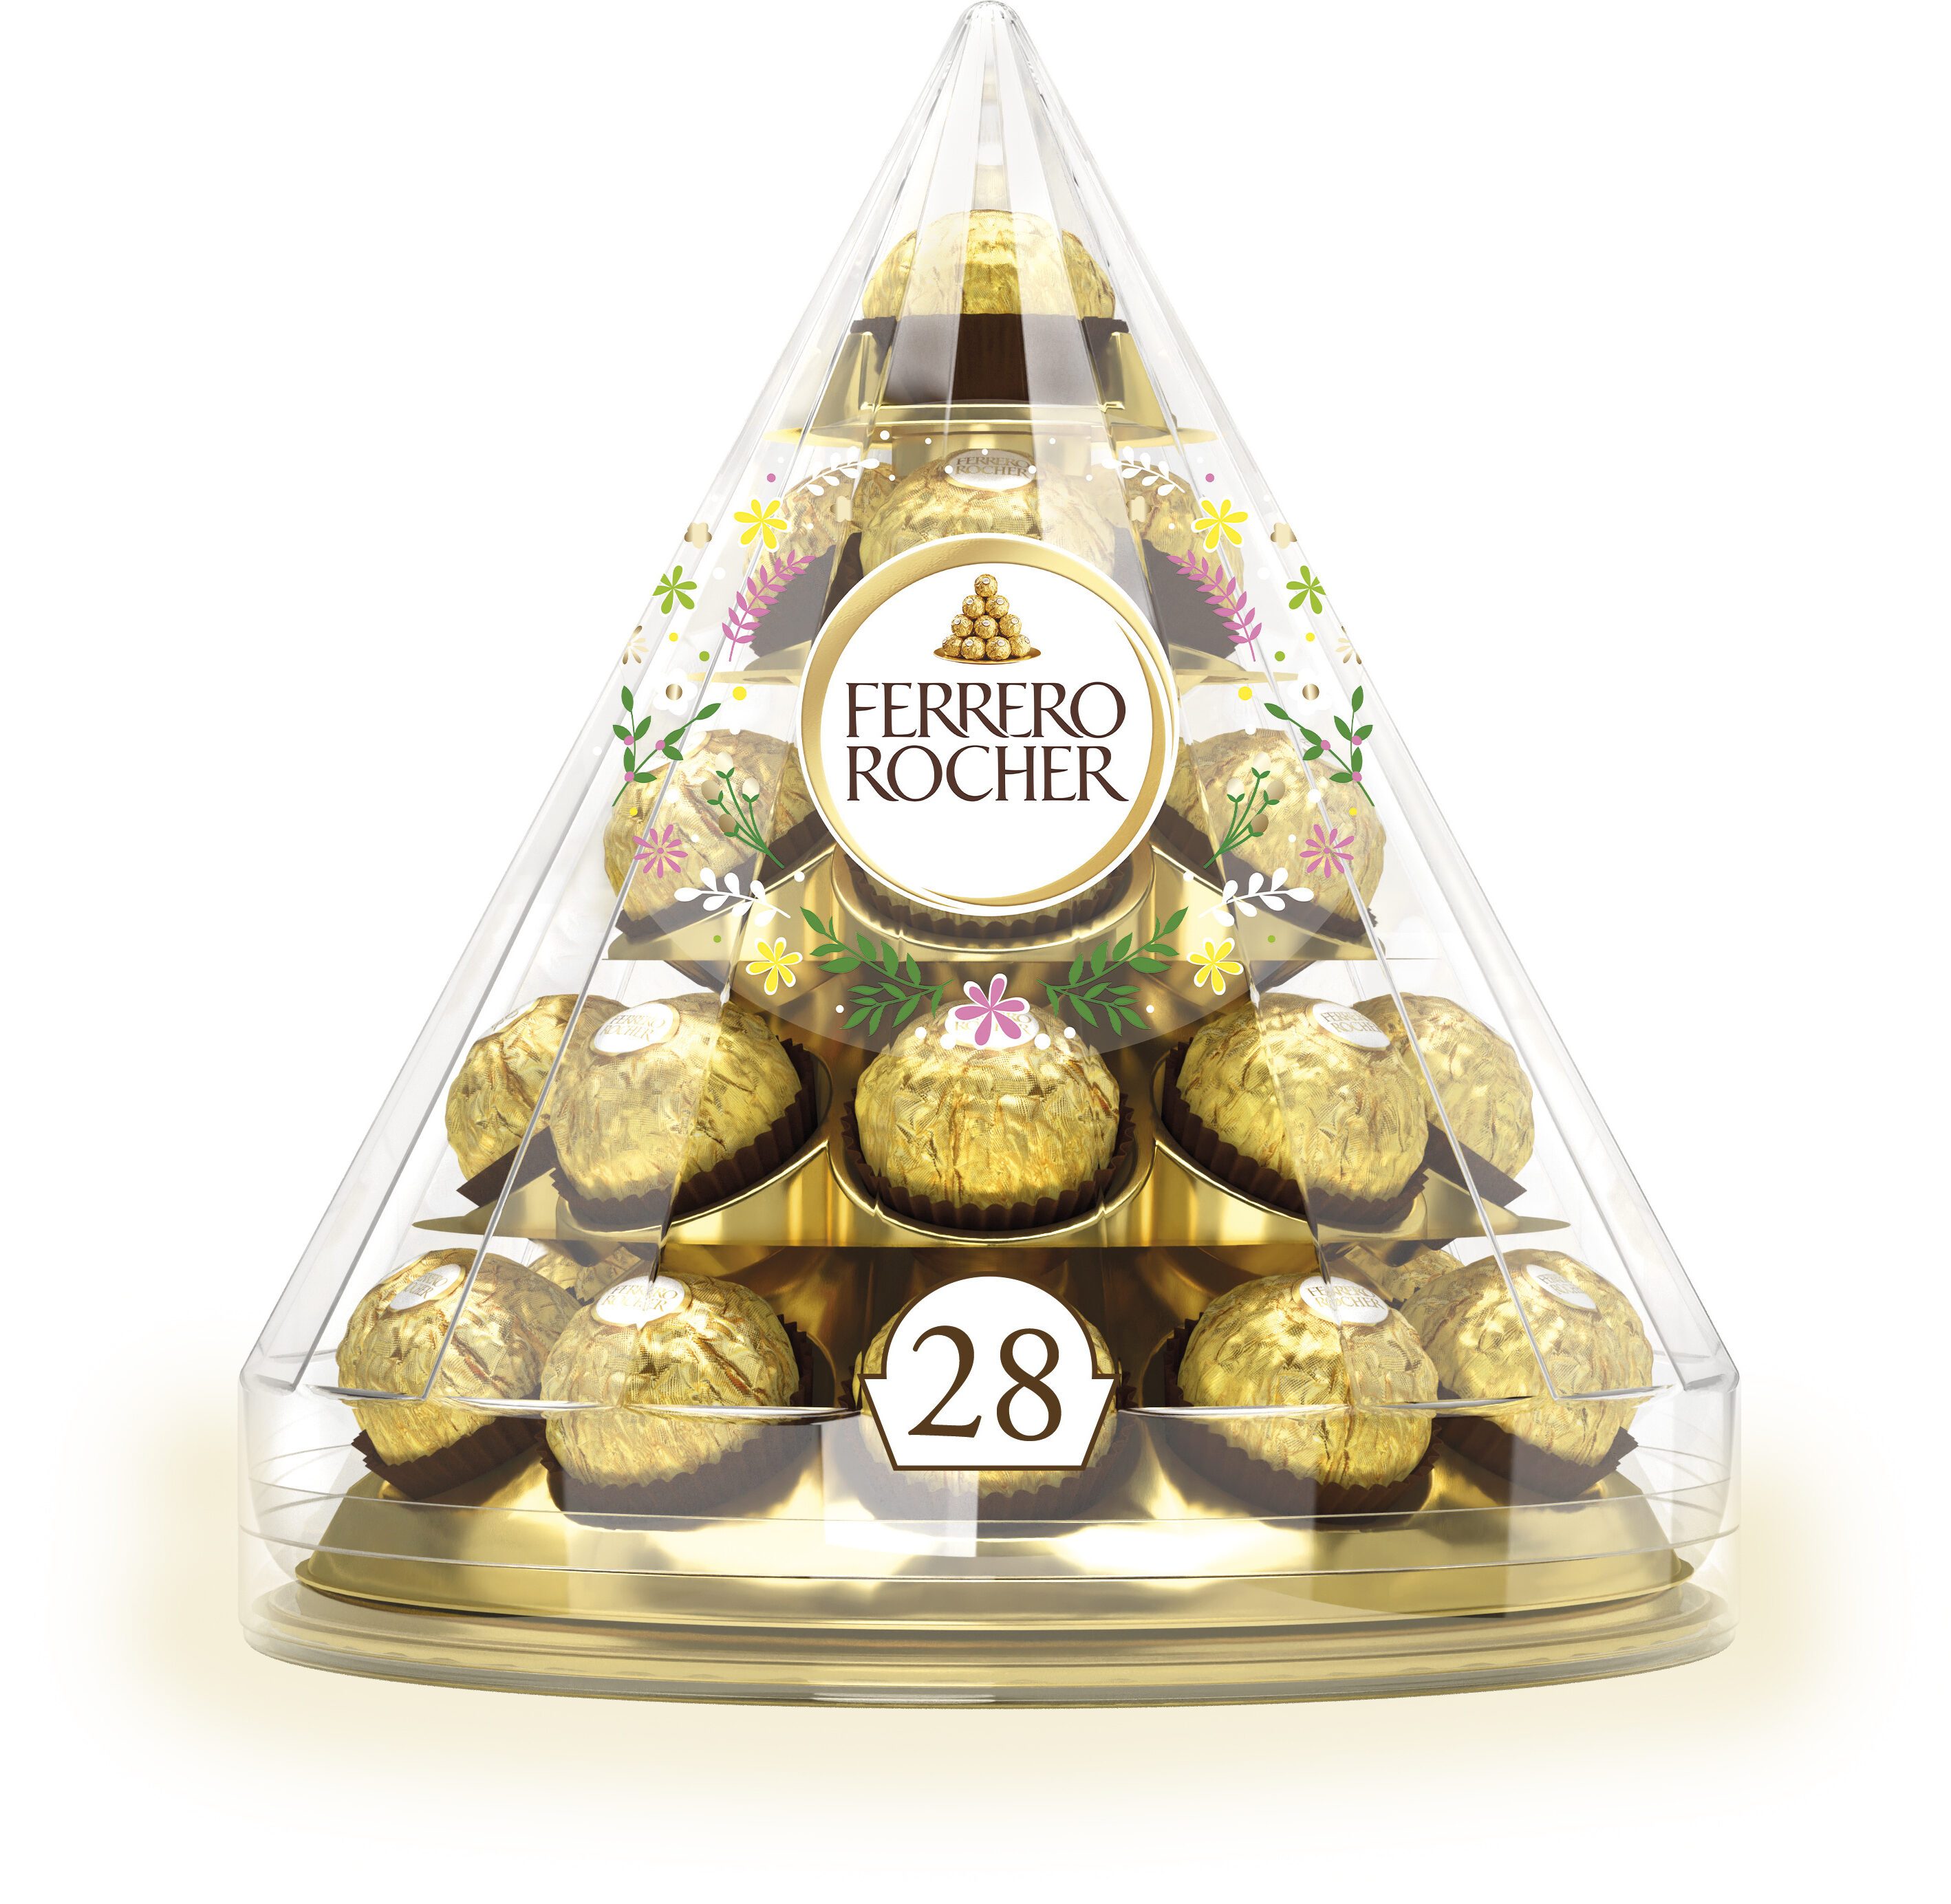 Ferrero rocher fines gaufrettes enrobees de chocolat au lait et noisettes avec noisette entiere pyramide de 28 pieces - Produit